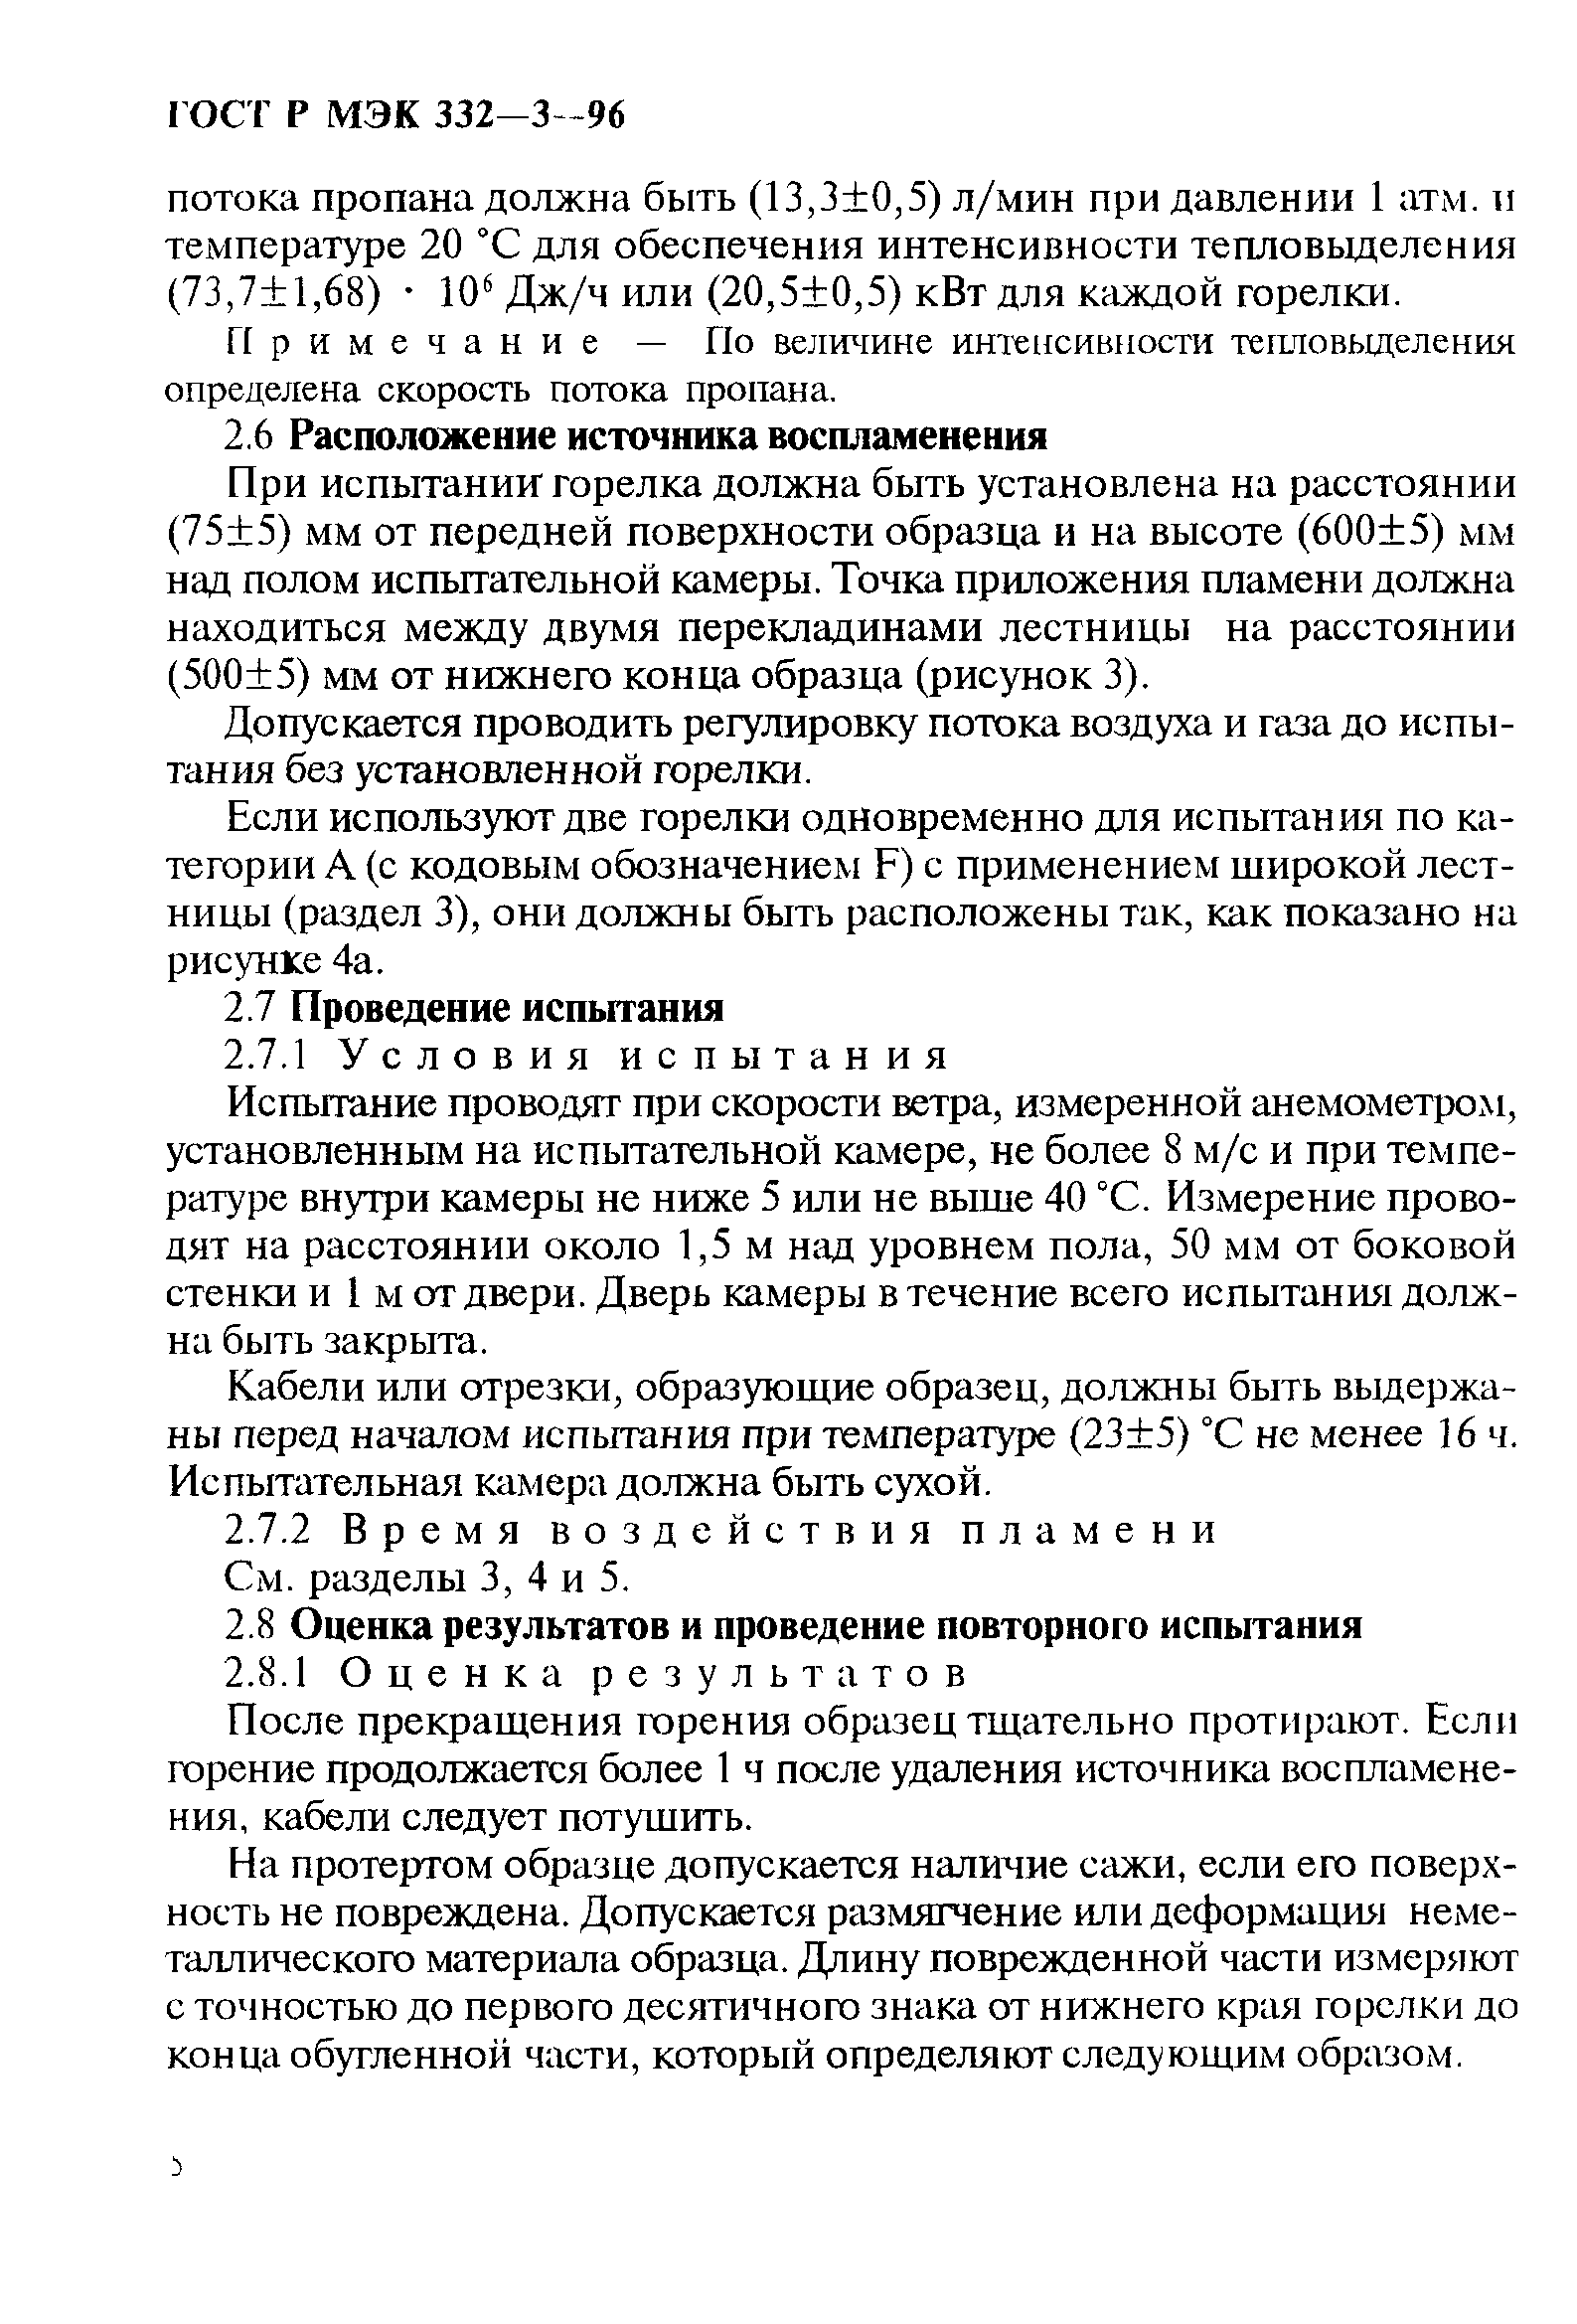 ГОСТ Р МЭК 332-3-96